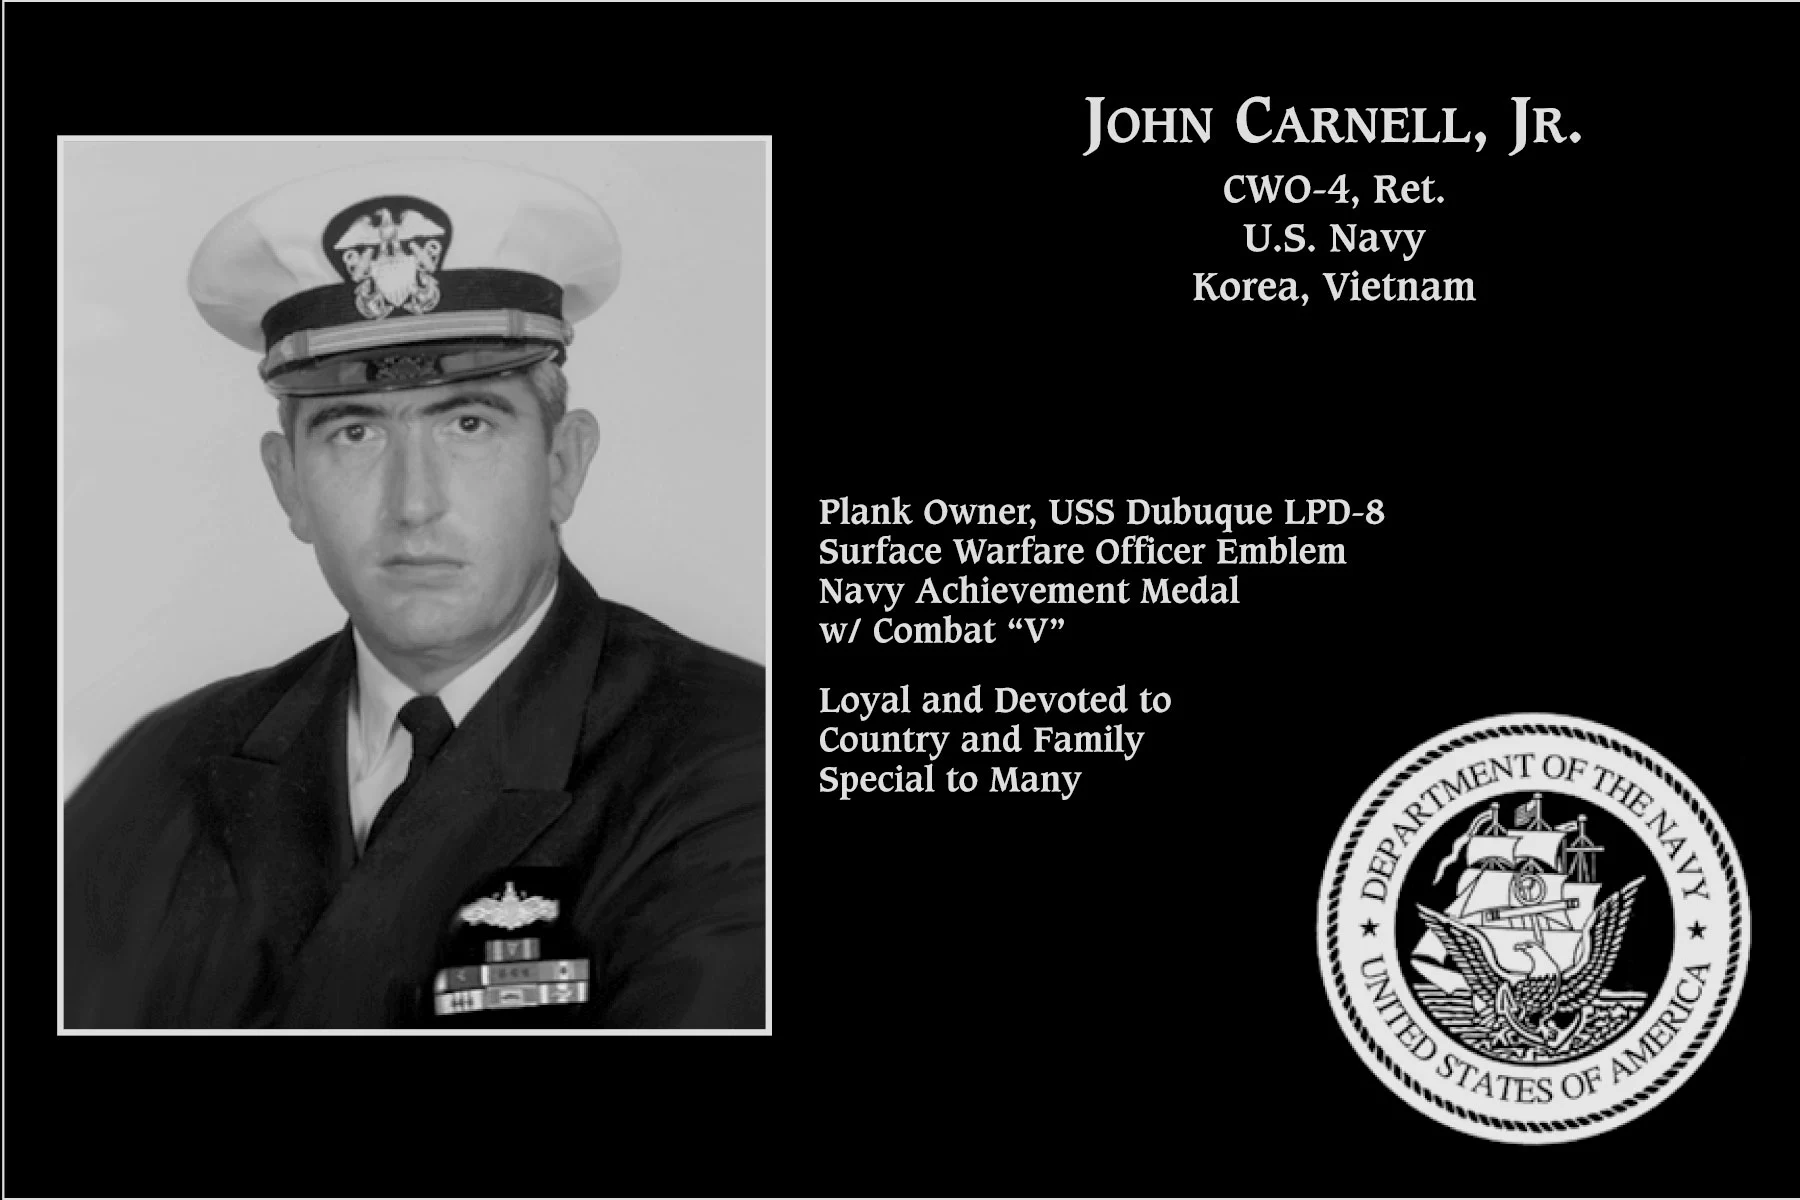 John Carnell jr